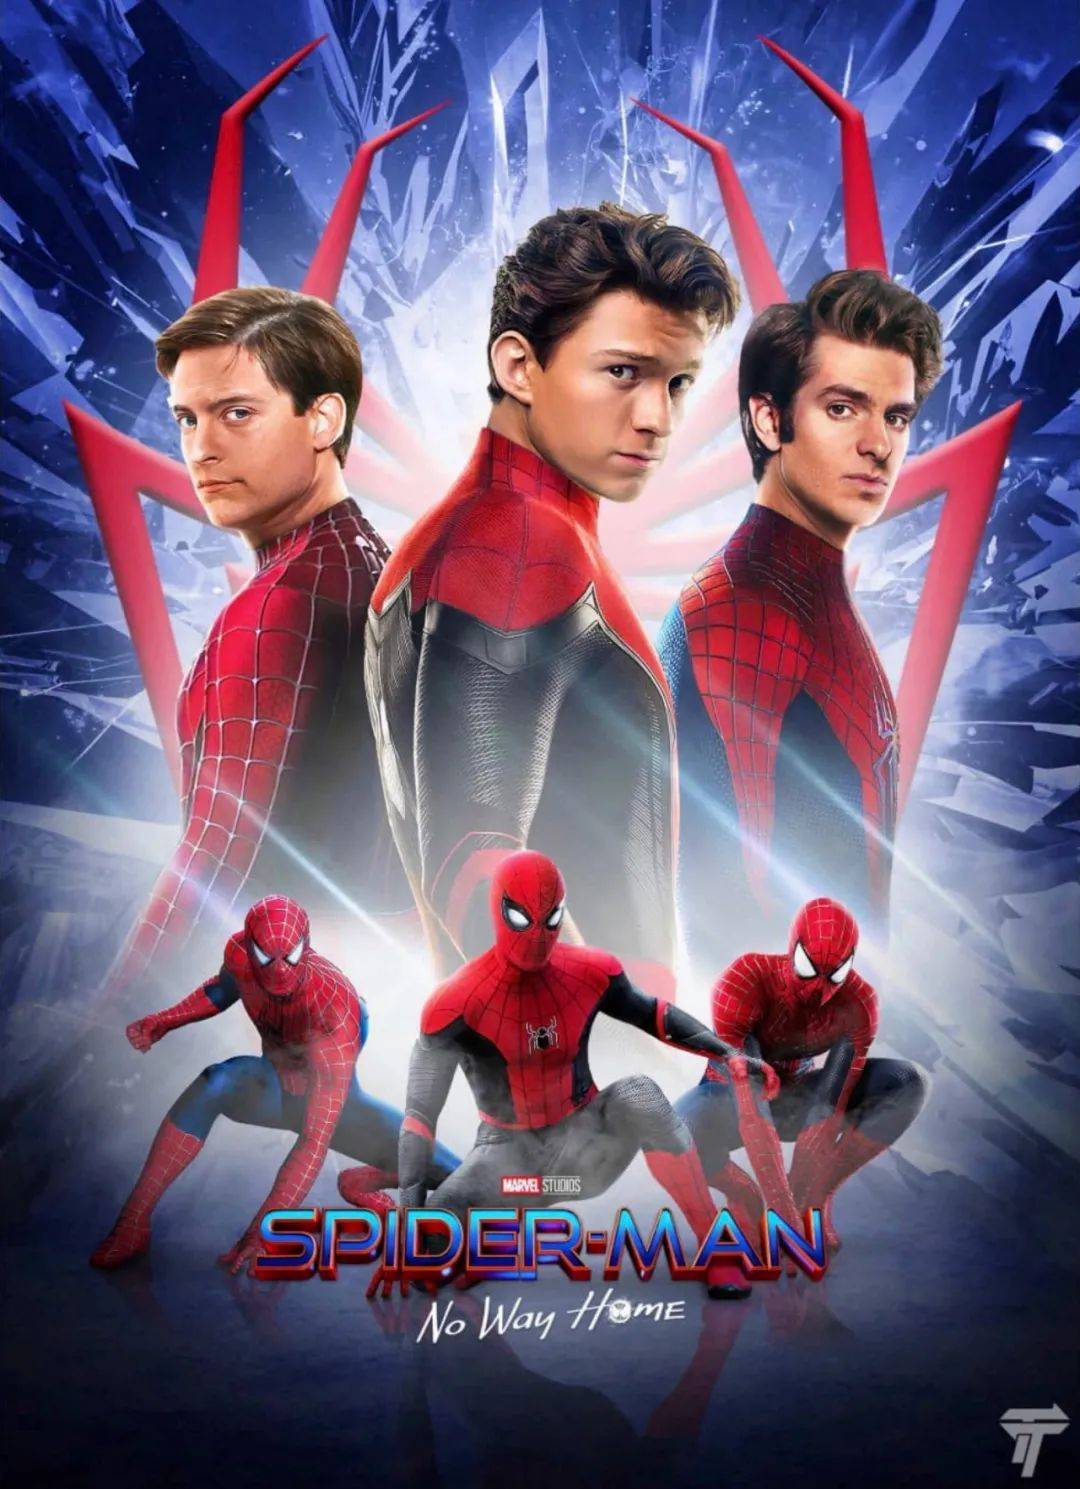 蜘蛛侠 英雄无归 影评 保持着良善的初衷 结局系列最佳 彼得 帕克 宇宙 电影